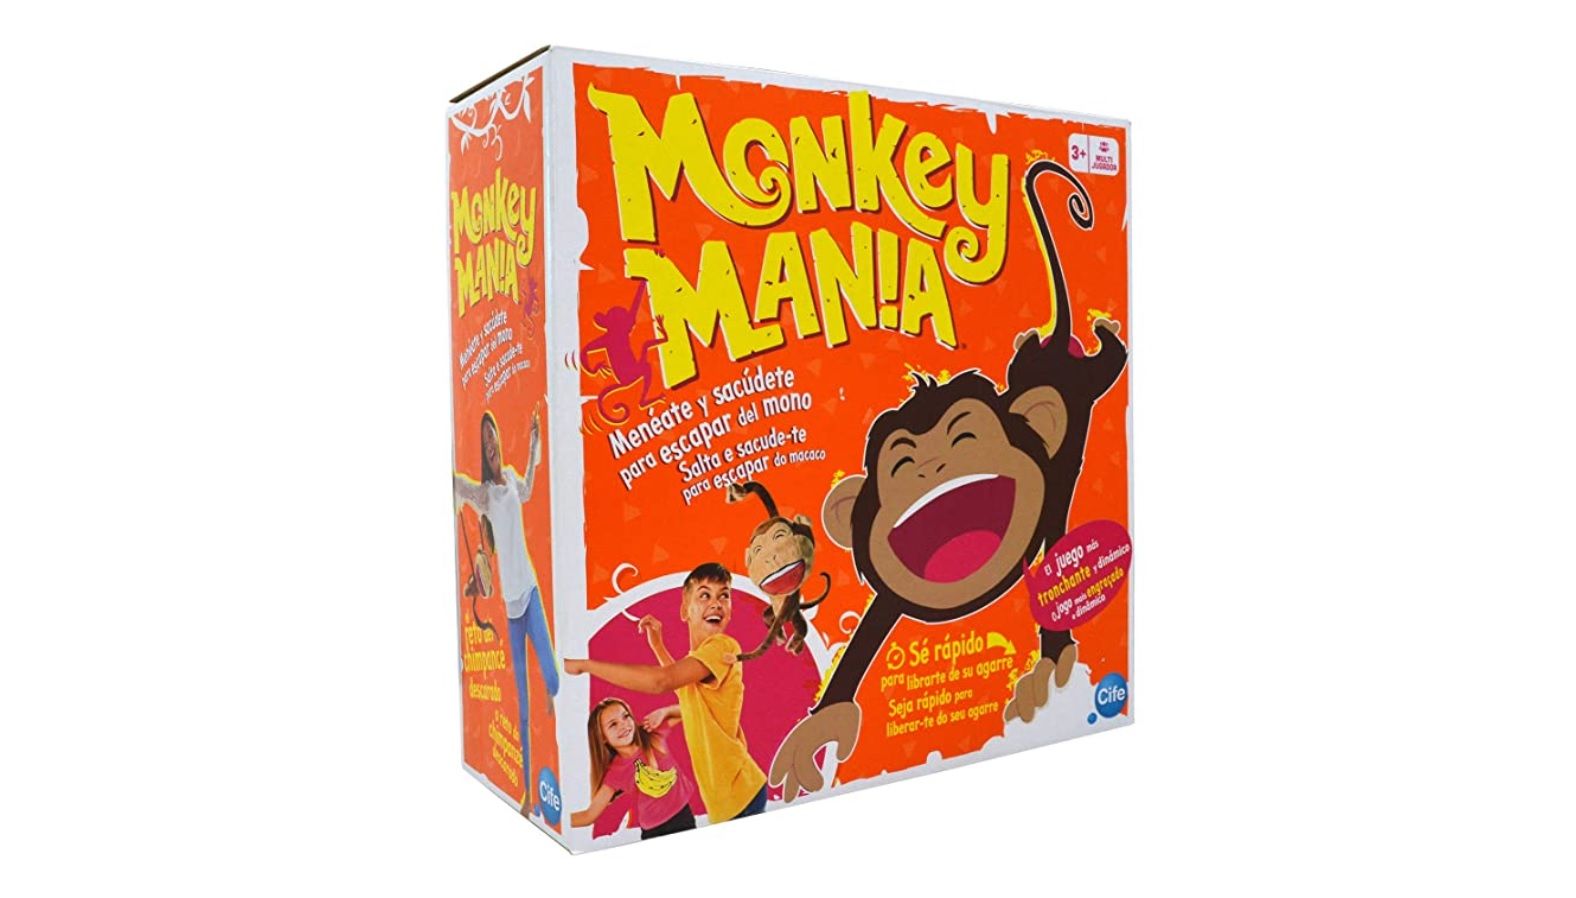 ¡Descuentazo! Juego Monkey Mania por sólo 10,65€ (antes 21,30€)